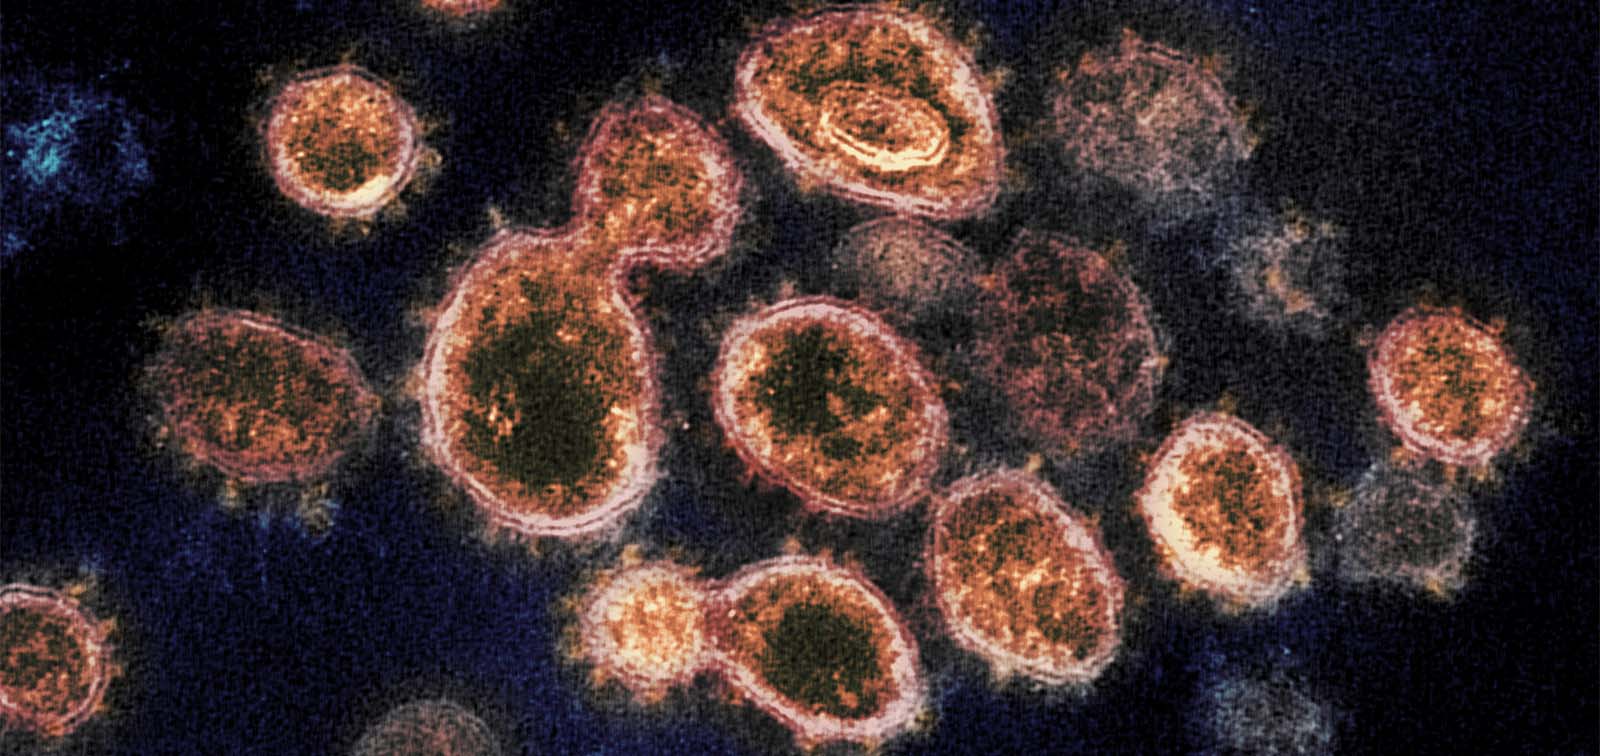 SARS-CoV2 coronavirus by NIH Image Gallery